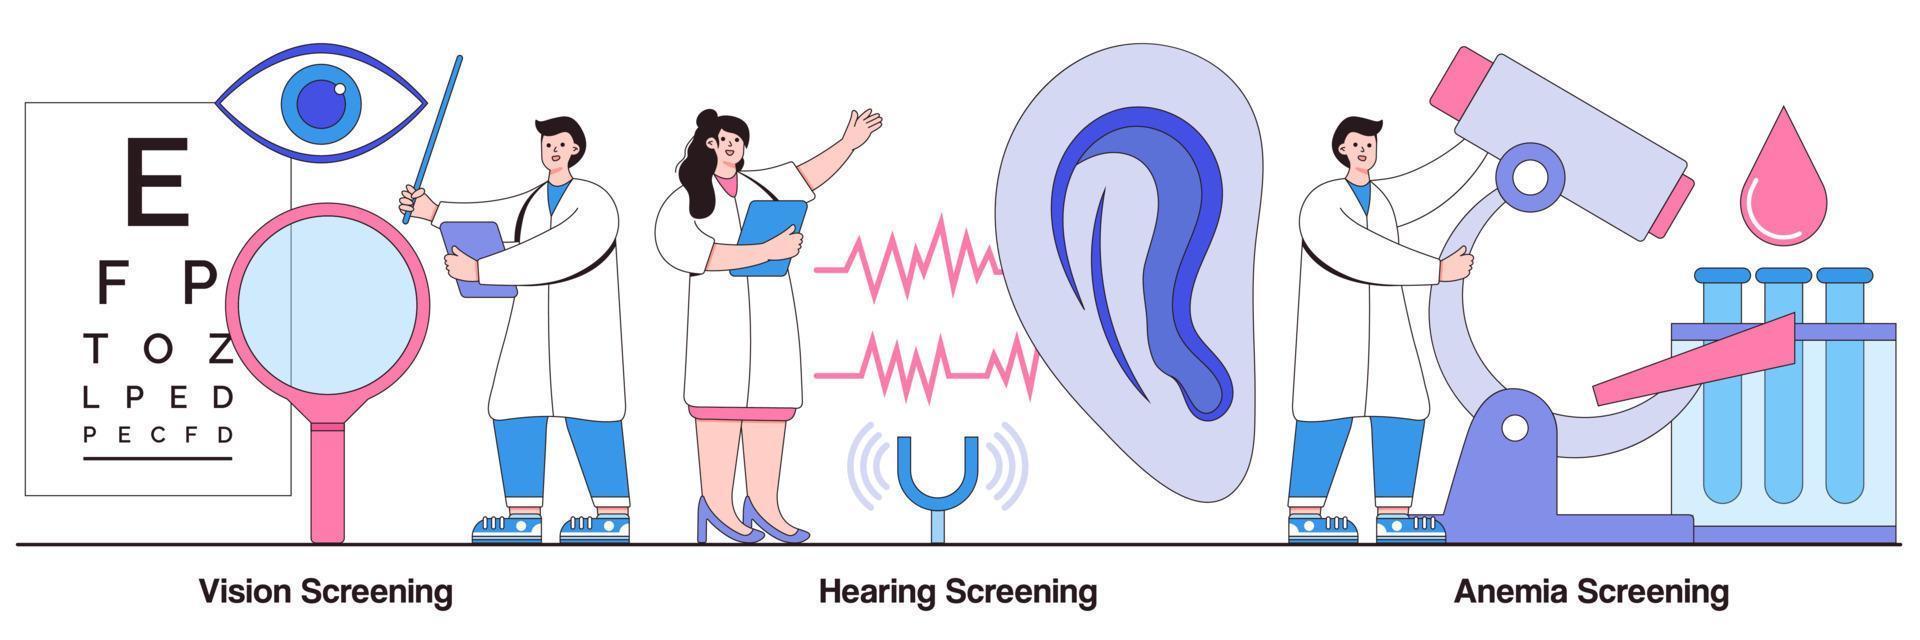 zicht-, gehoor- en bloedarmoedescreening geïllustreerd pakket vector